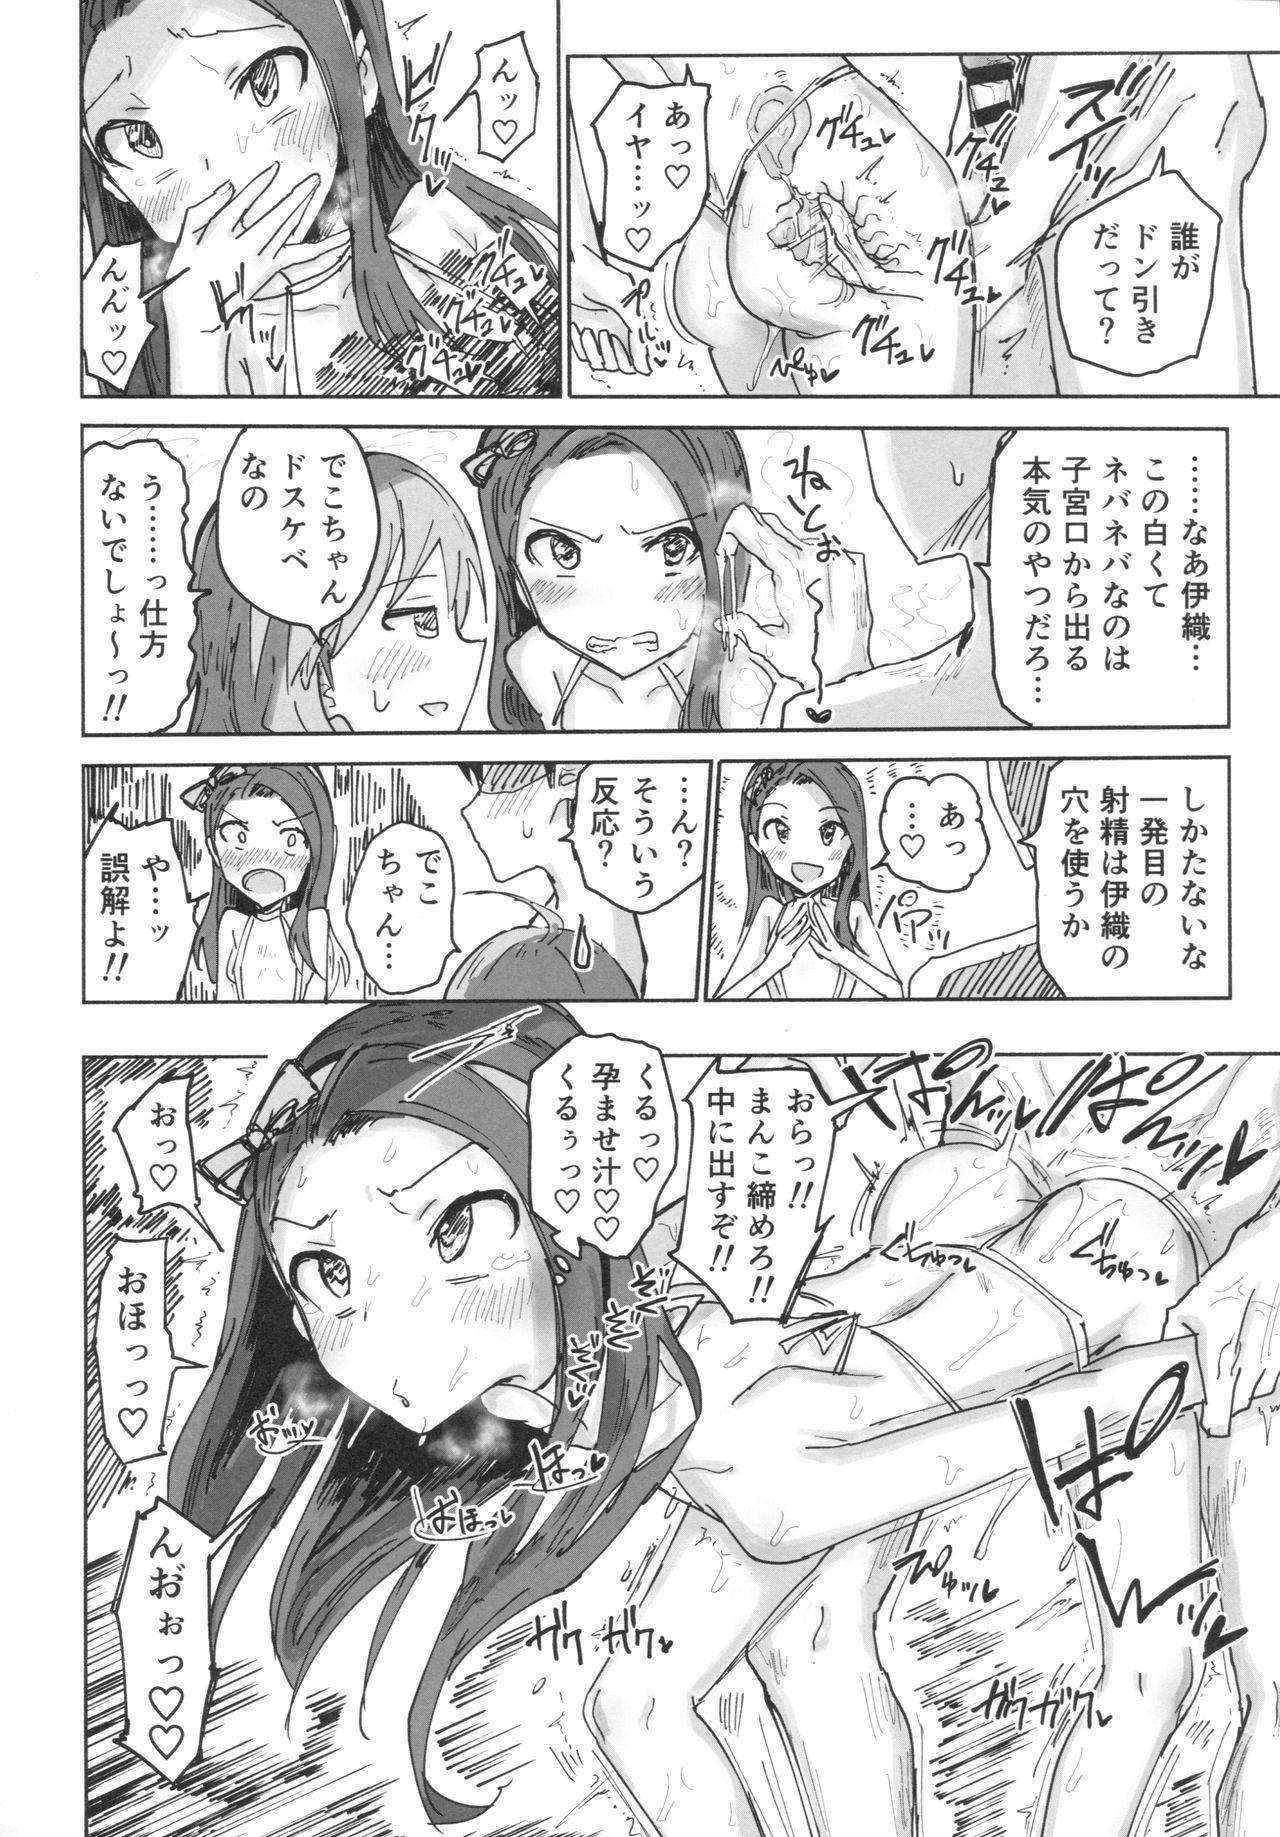 Butthole (C91) [Gamenhaji (Noji)] Miki to Iori to Tanetsuke Shouryokou 2-haku 3-kka (THE iDOLM@STER) - The idolmaster Travesti - Page 7